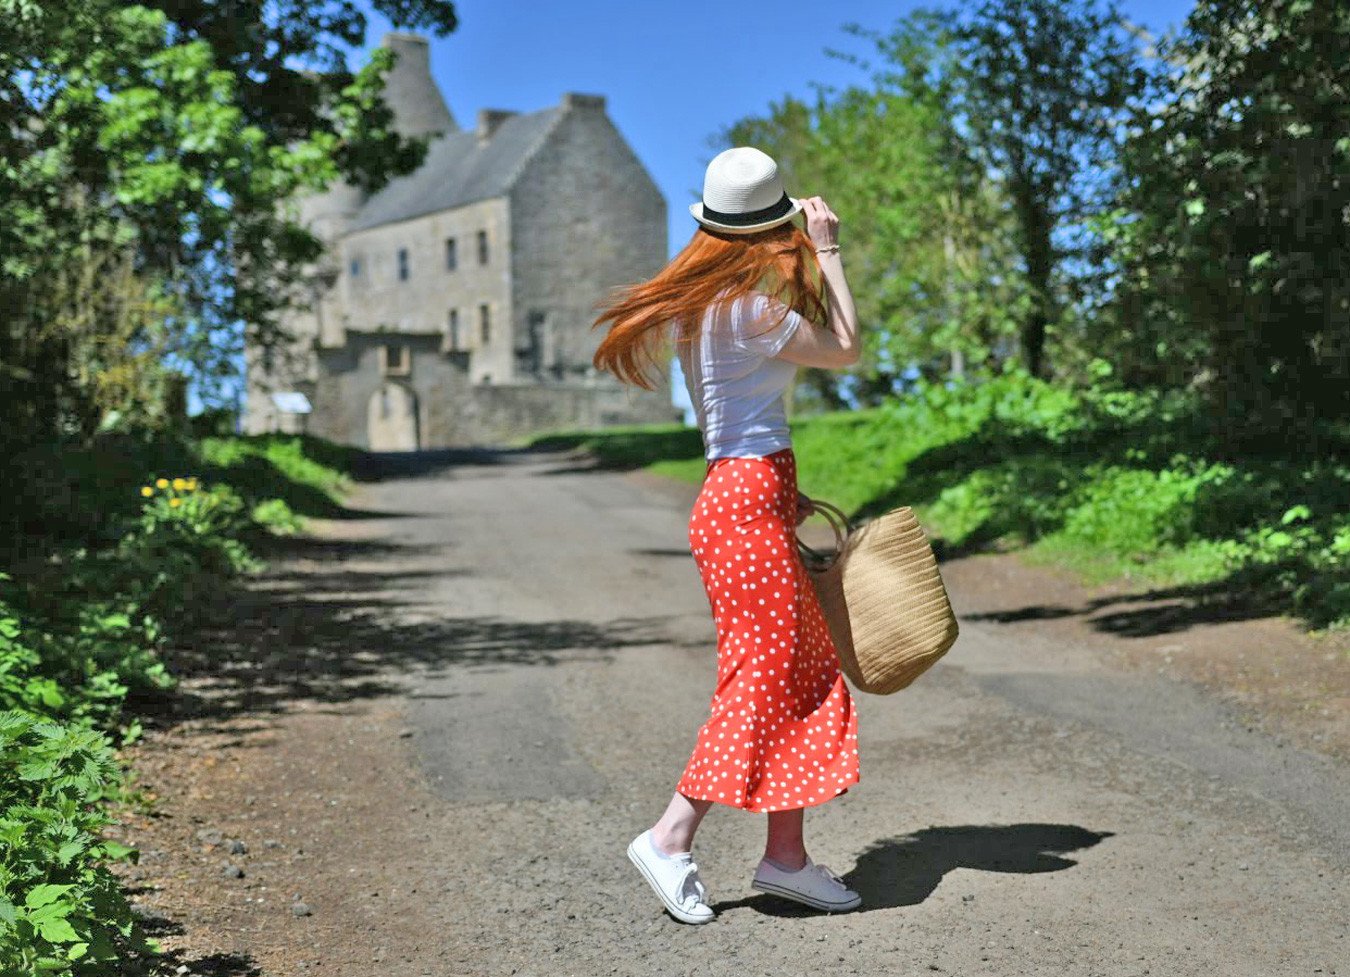 walking towards Lallybroch - a.k.a Midhope Castle - an Outlander filming location in Scotland